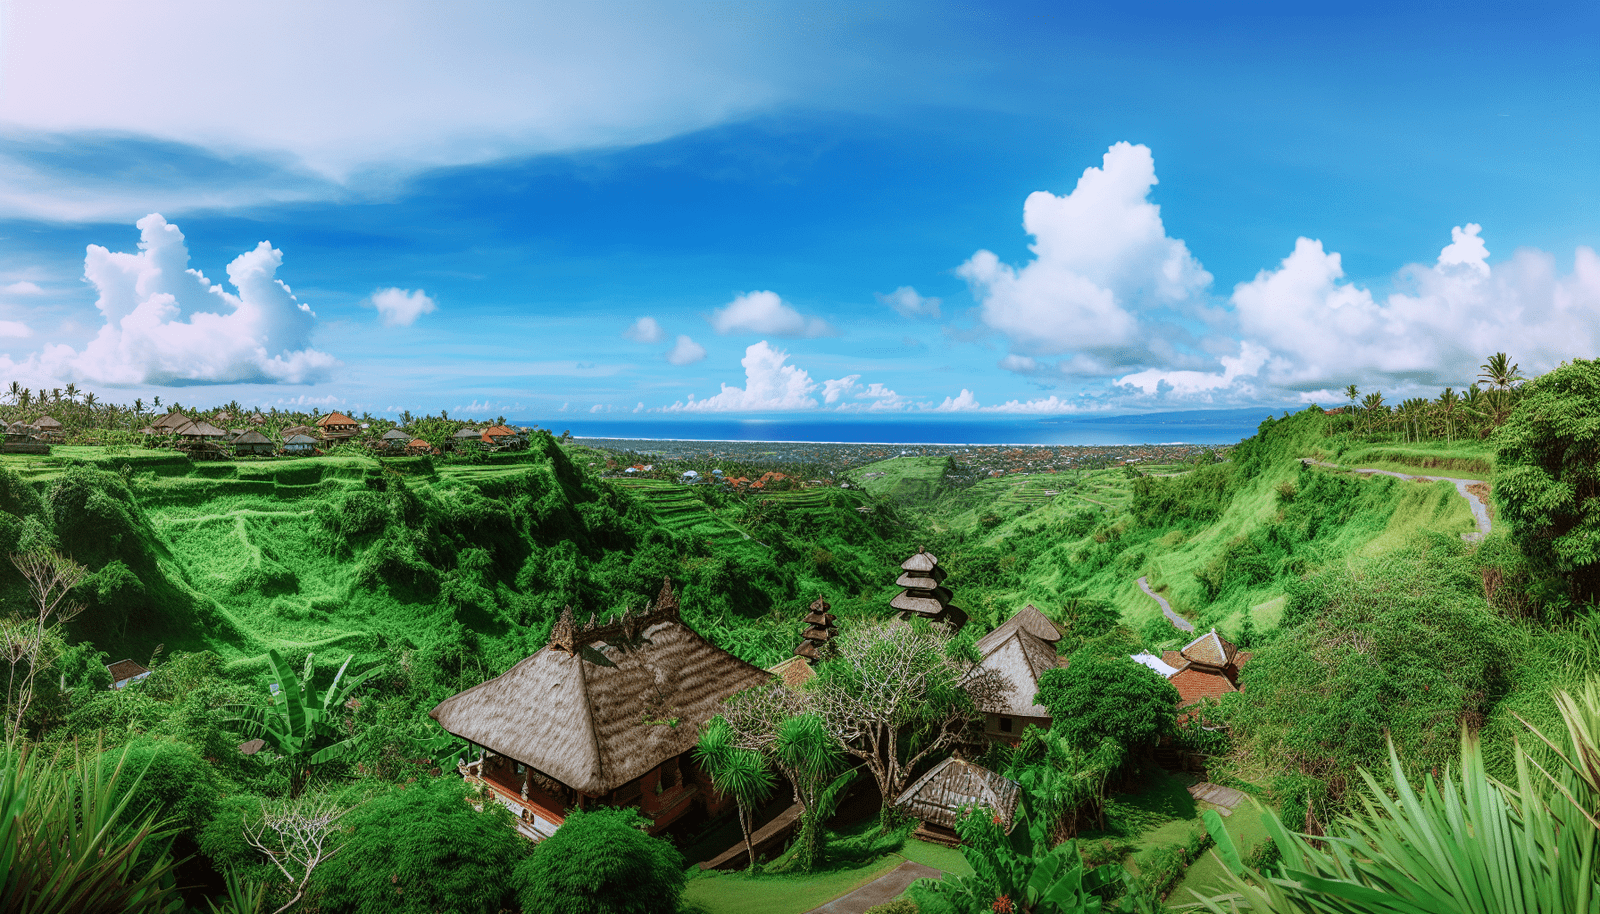 Vue panoramique du paysage de Bali avec sa verdure luxuriante et son architecture traditionnelle